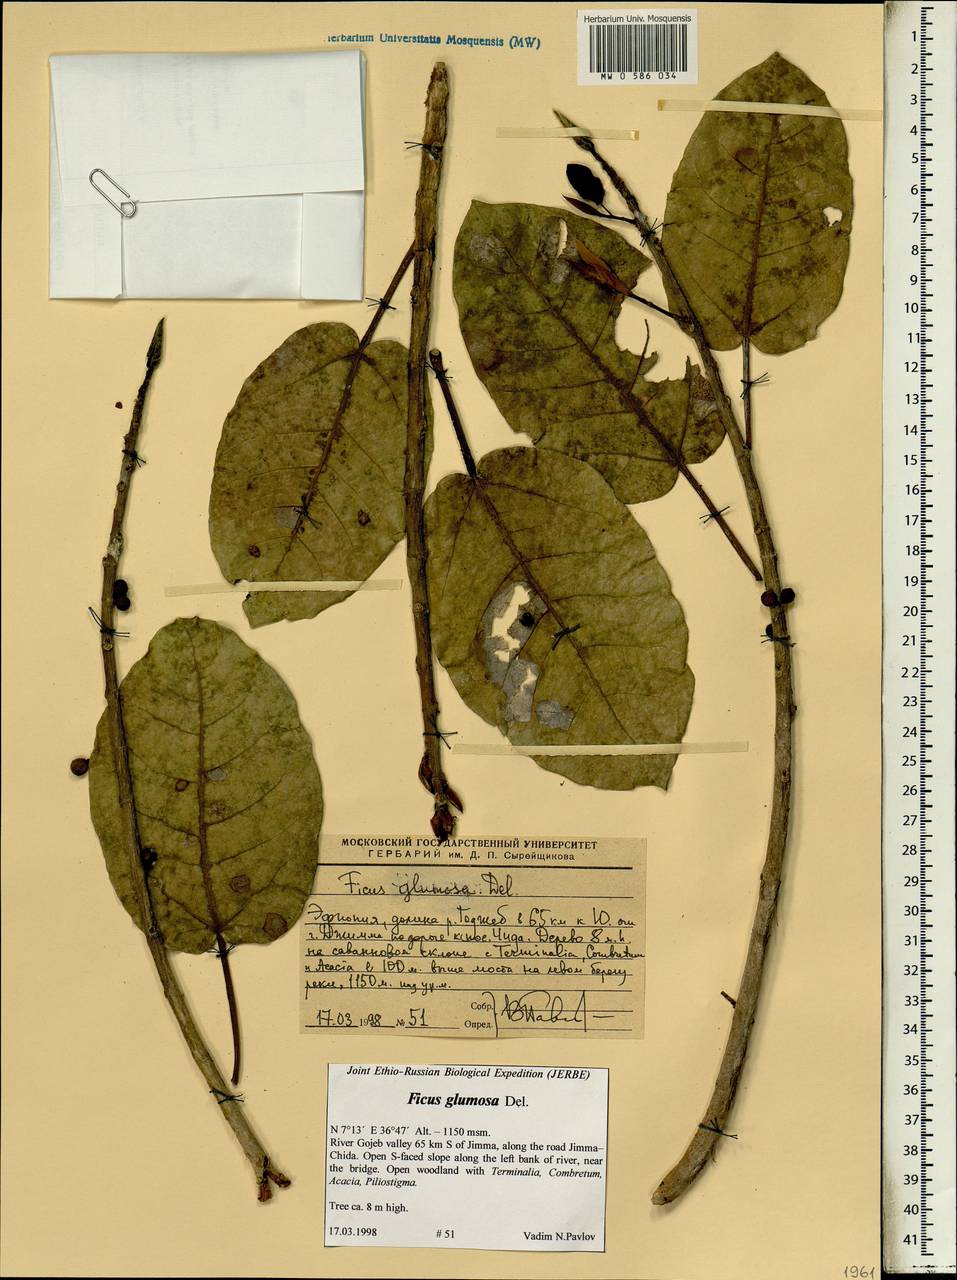 Ficus glumosa Del., Africa (AFR) (Ethiopia)